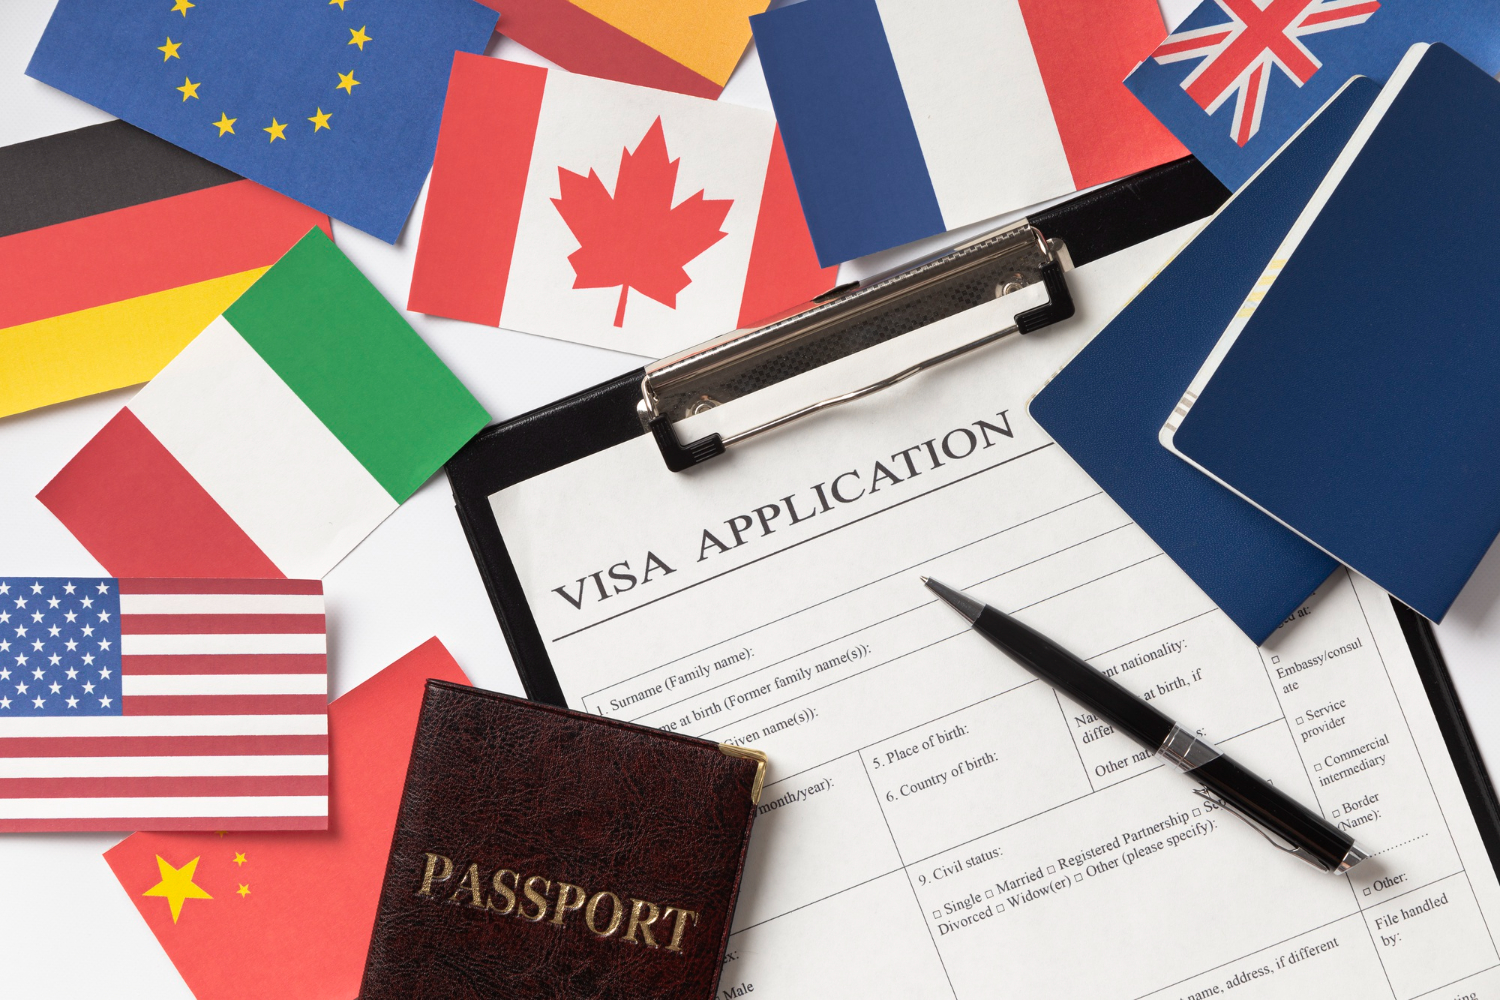 Schegen visa application made easy